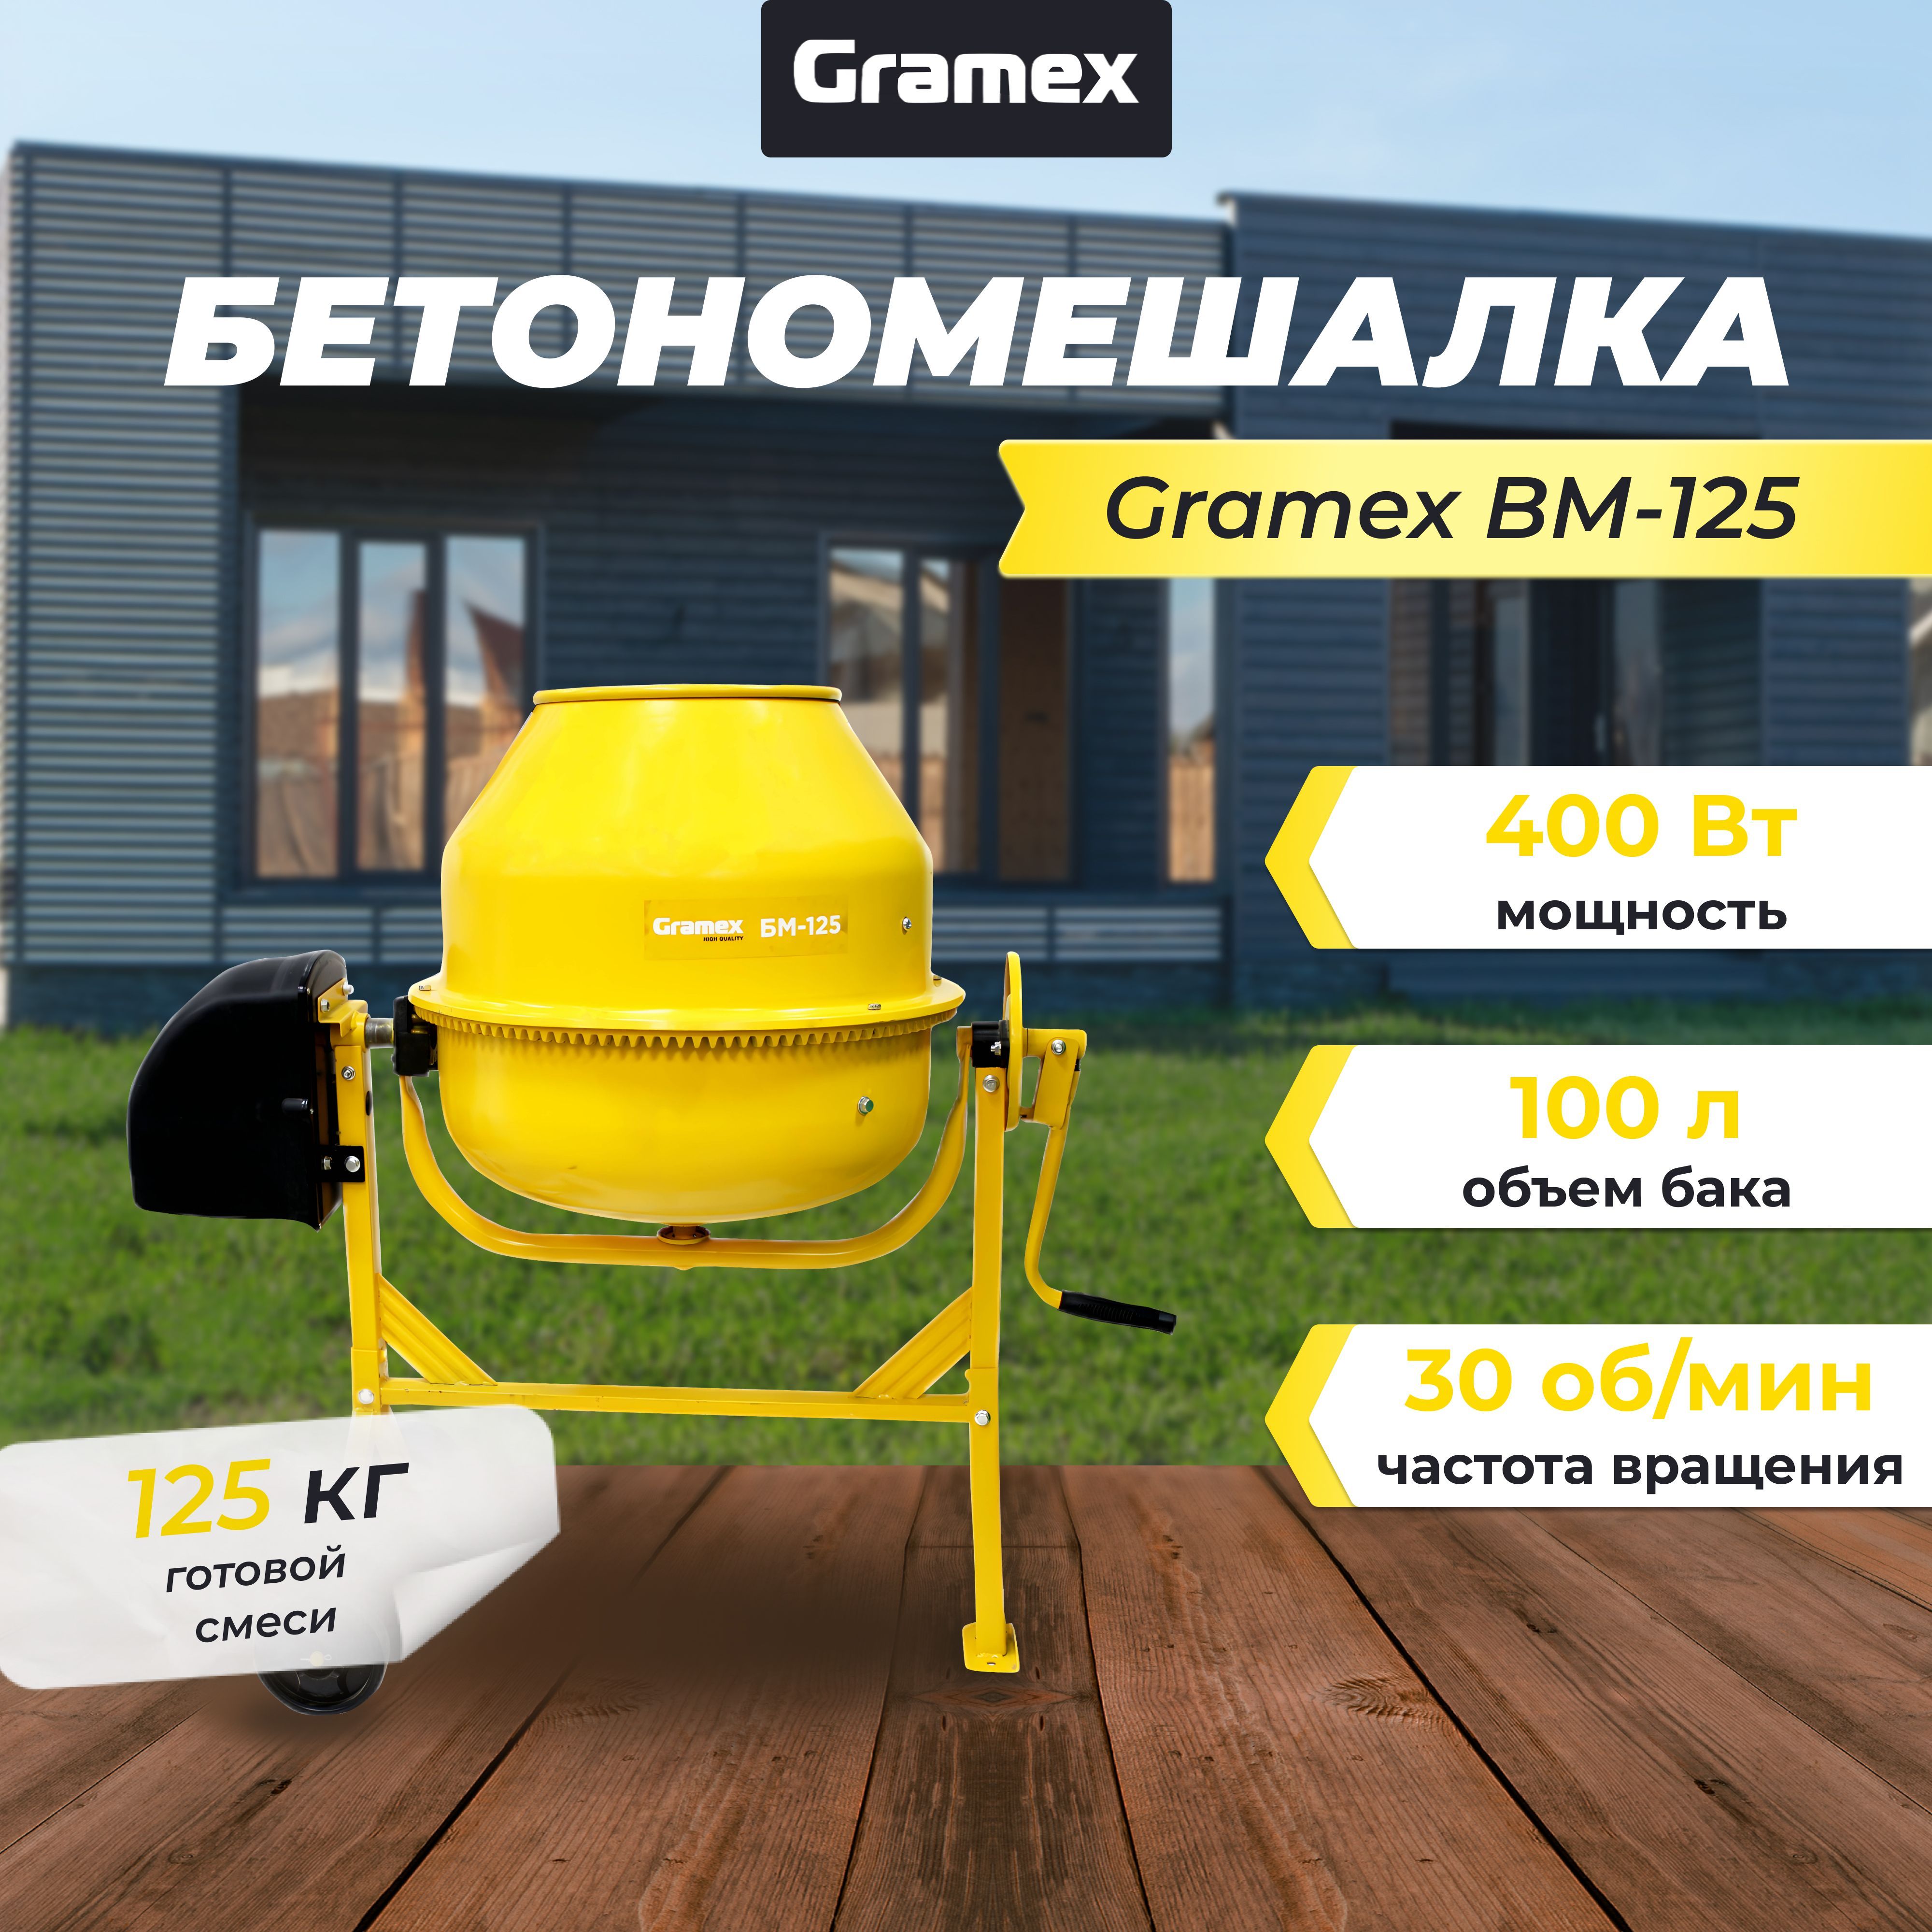 Бетономешалка Gramex BM-125 (400 Вт, 125 кг готовой смеси, чугун)